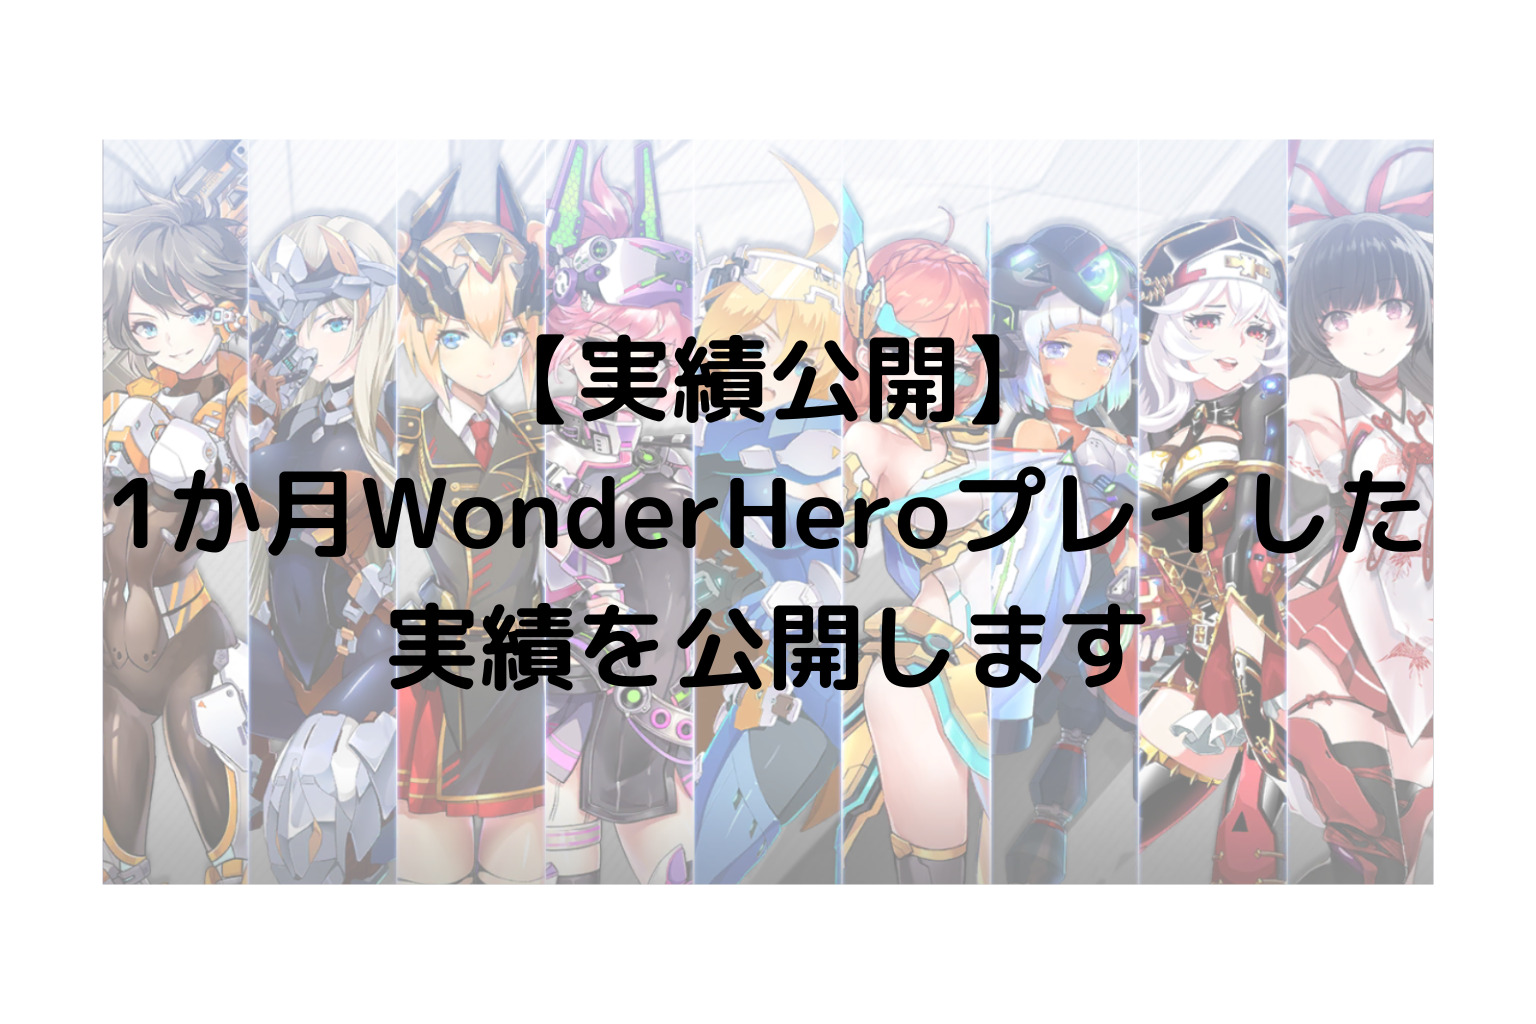 【実績公開】1か月WonderHeroプレイした実績を公開します